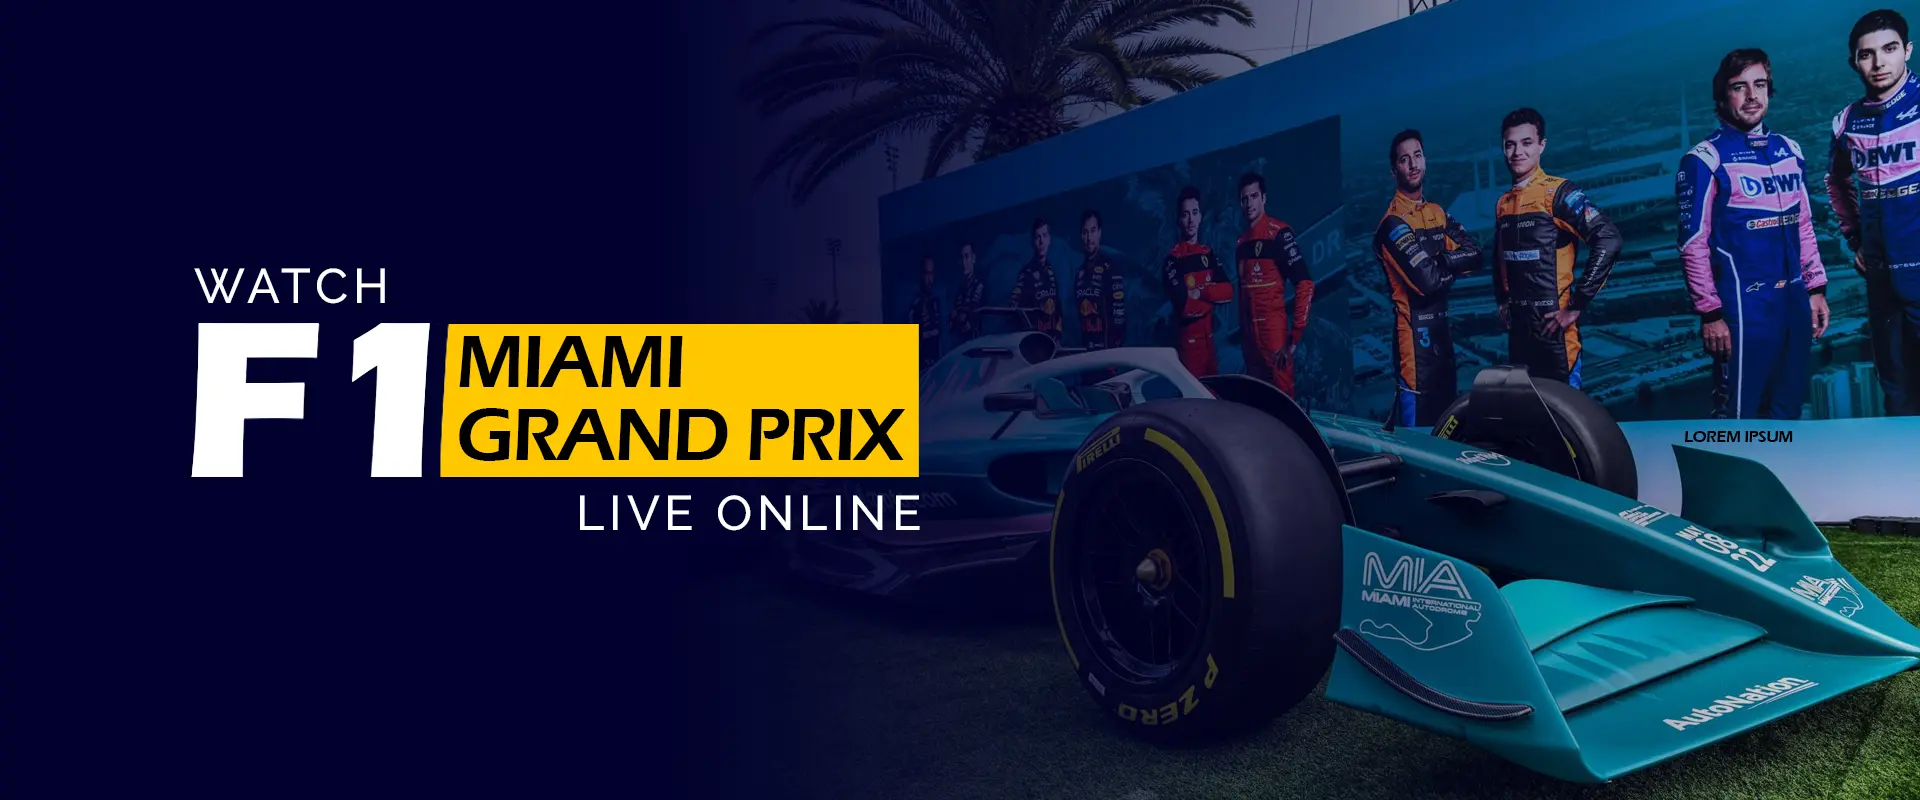 Смотрите Гран-при F1 Майами в прямом эфире онлайн